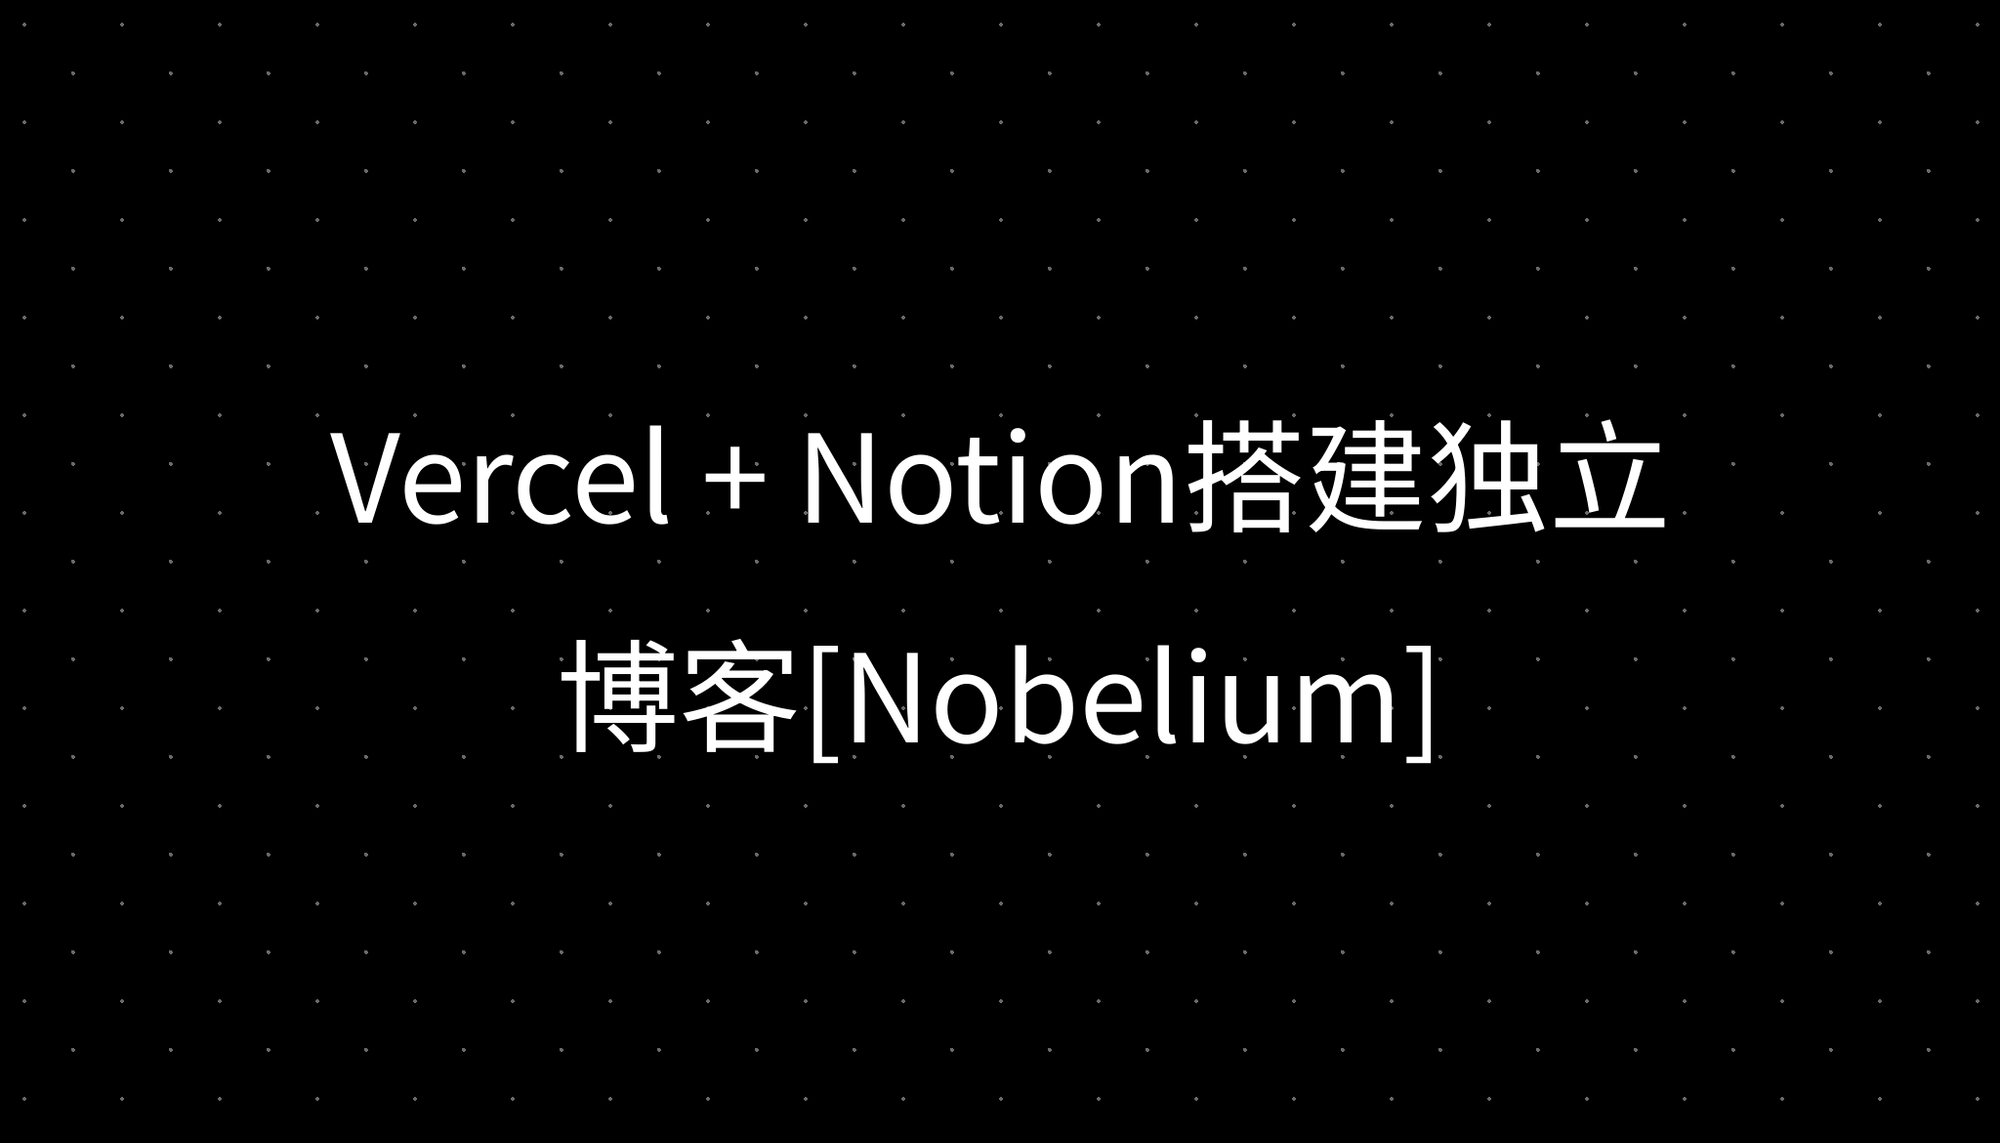 Vercel + Notion搭建独立博客[Nobelium]